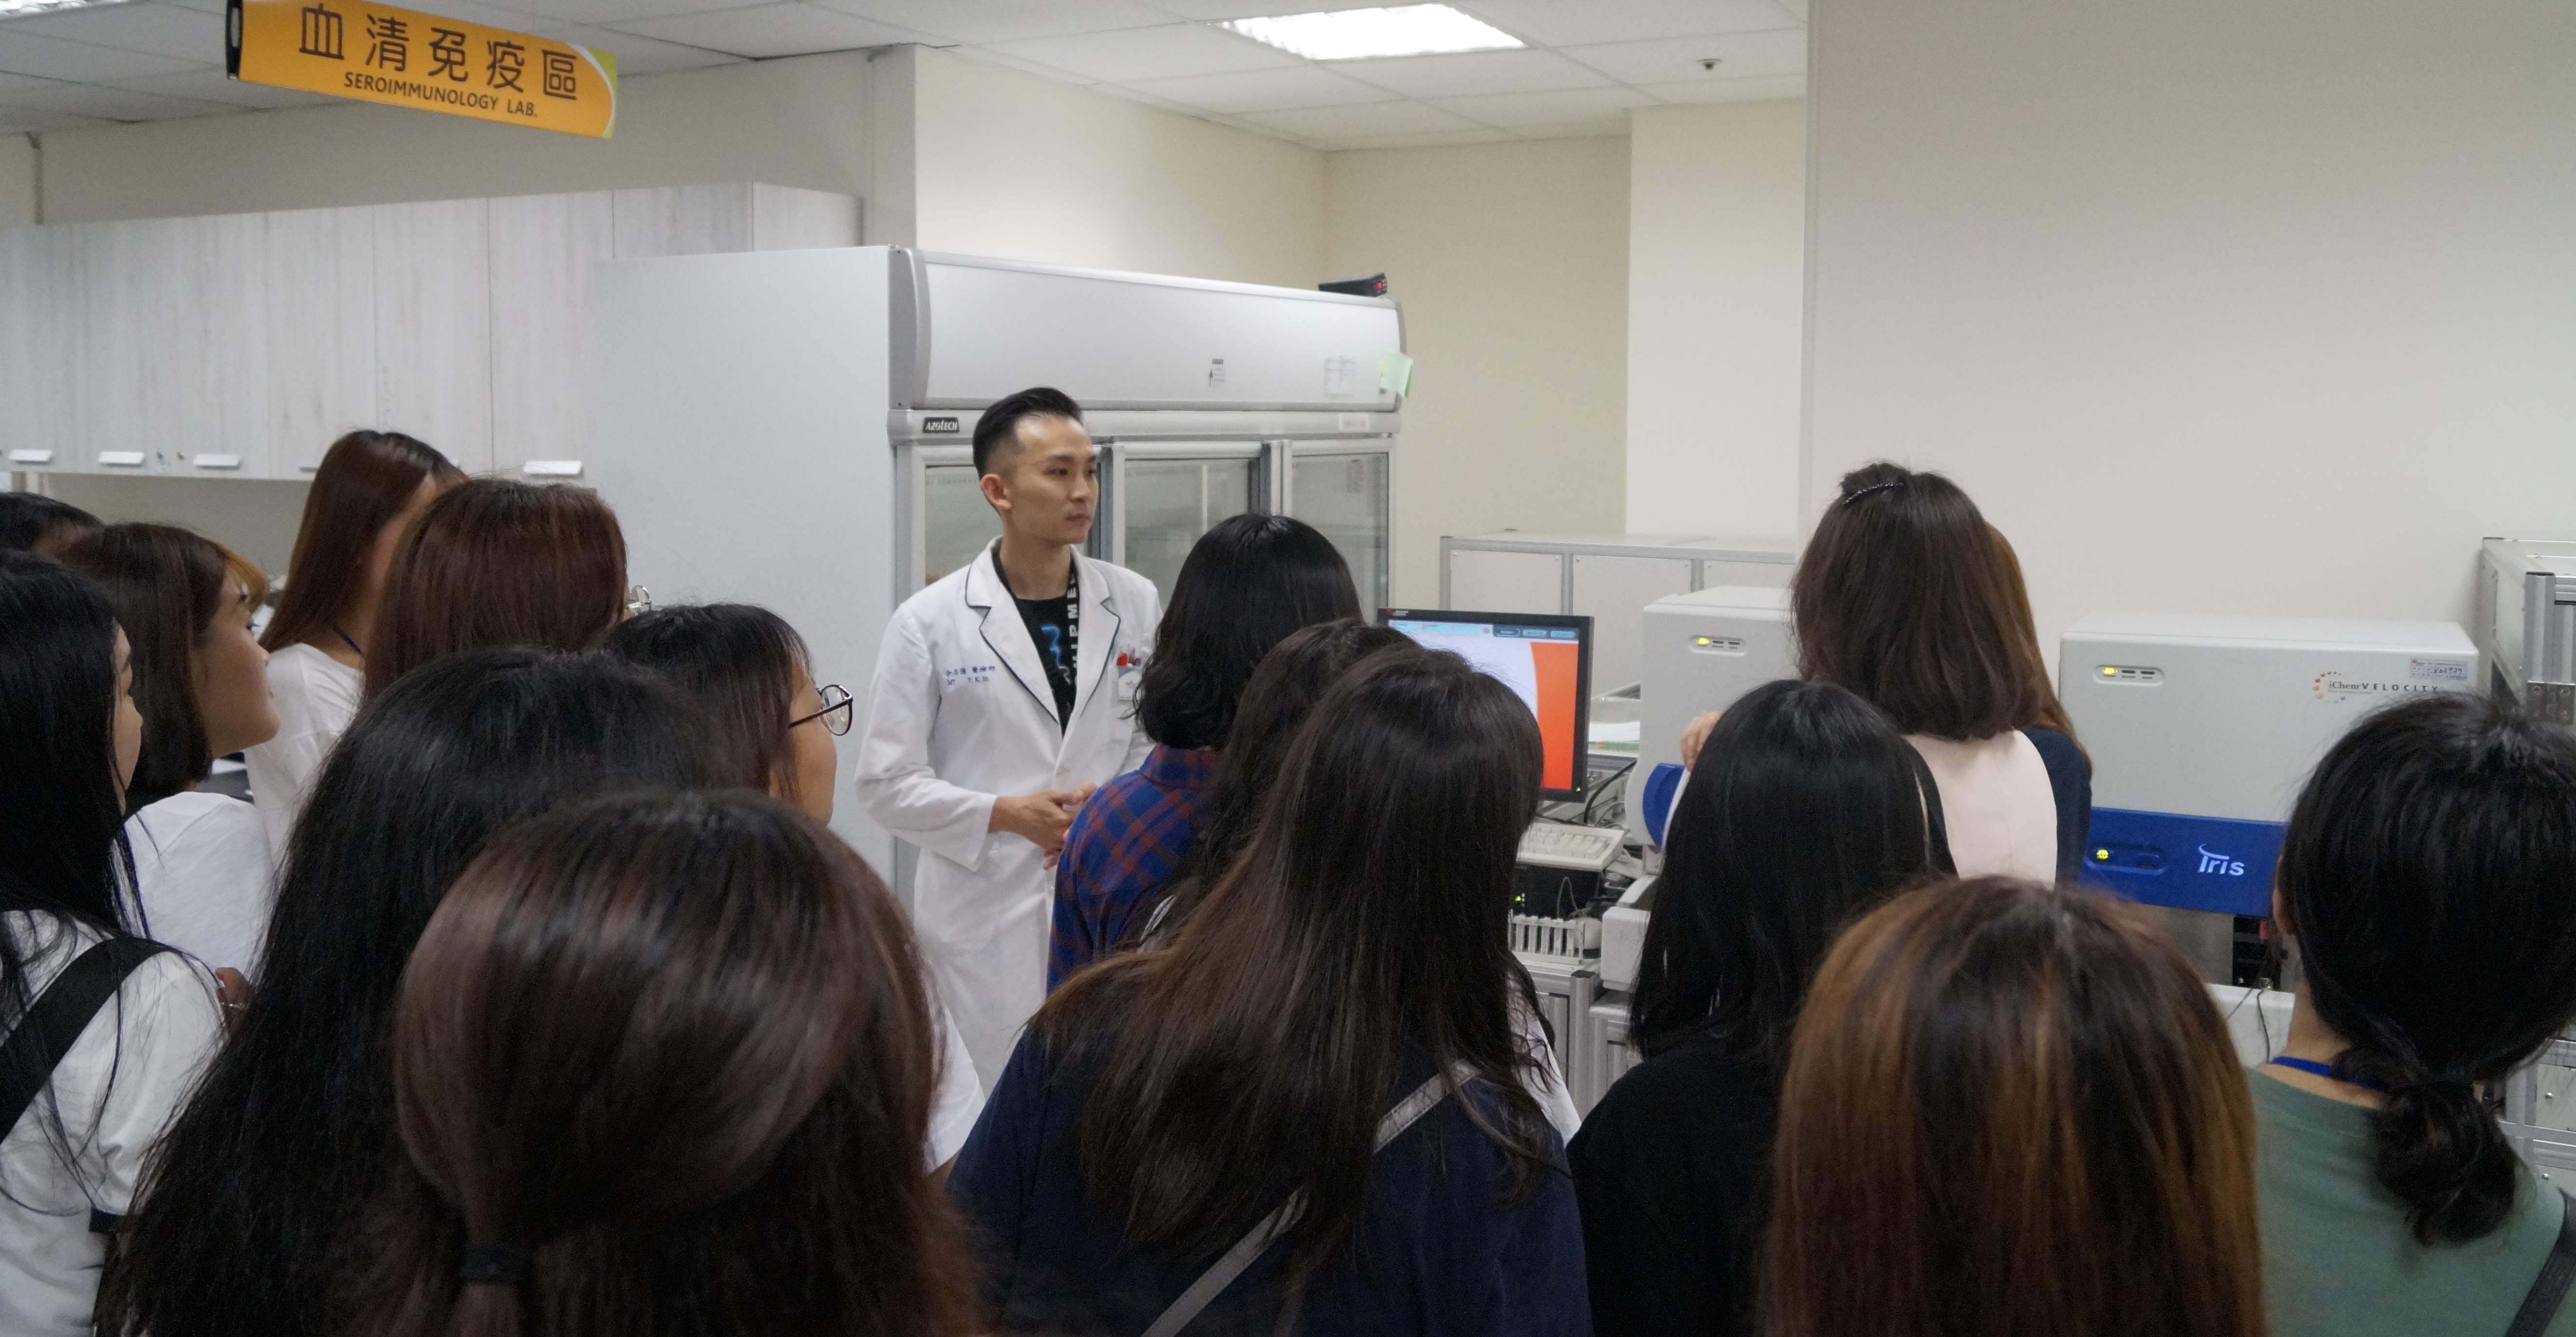 亞洲大學附設醫院檢驗科主任余志強為韓國仁荷大學師生介紹檢驗科業務。